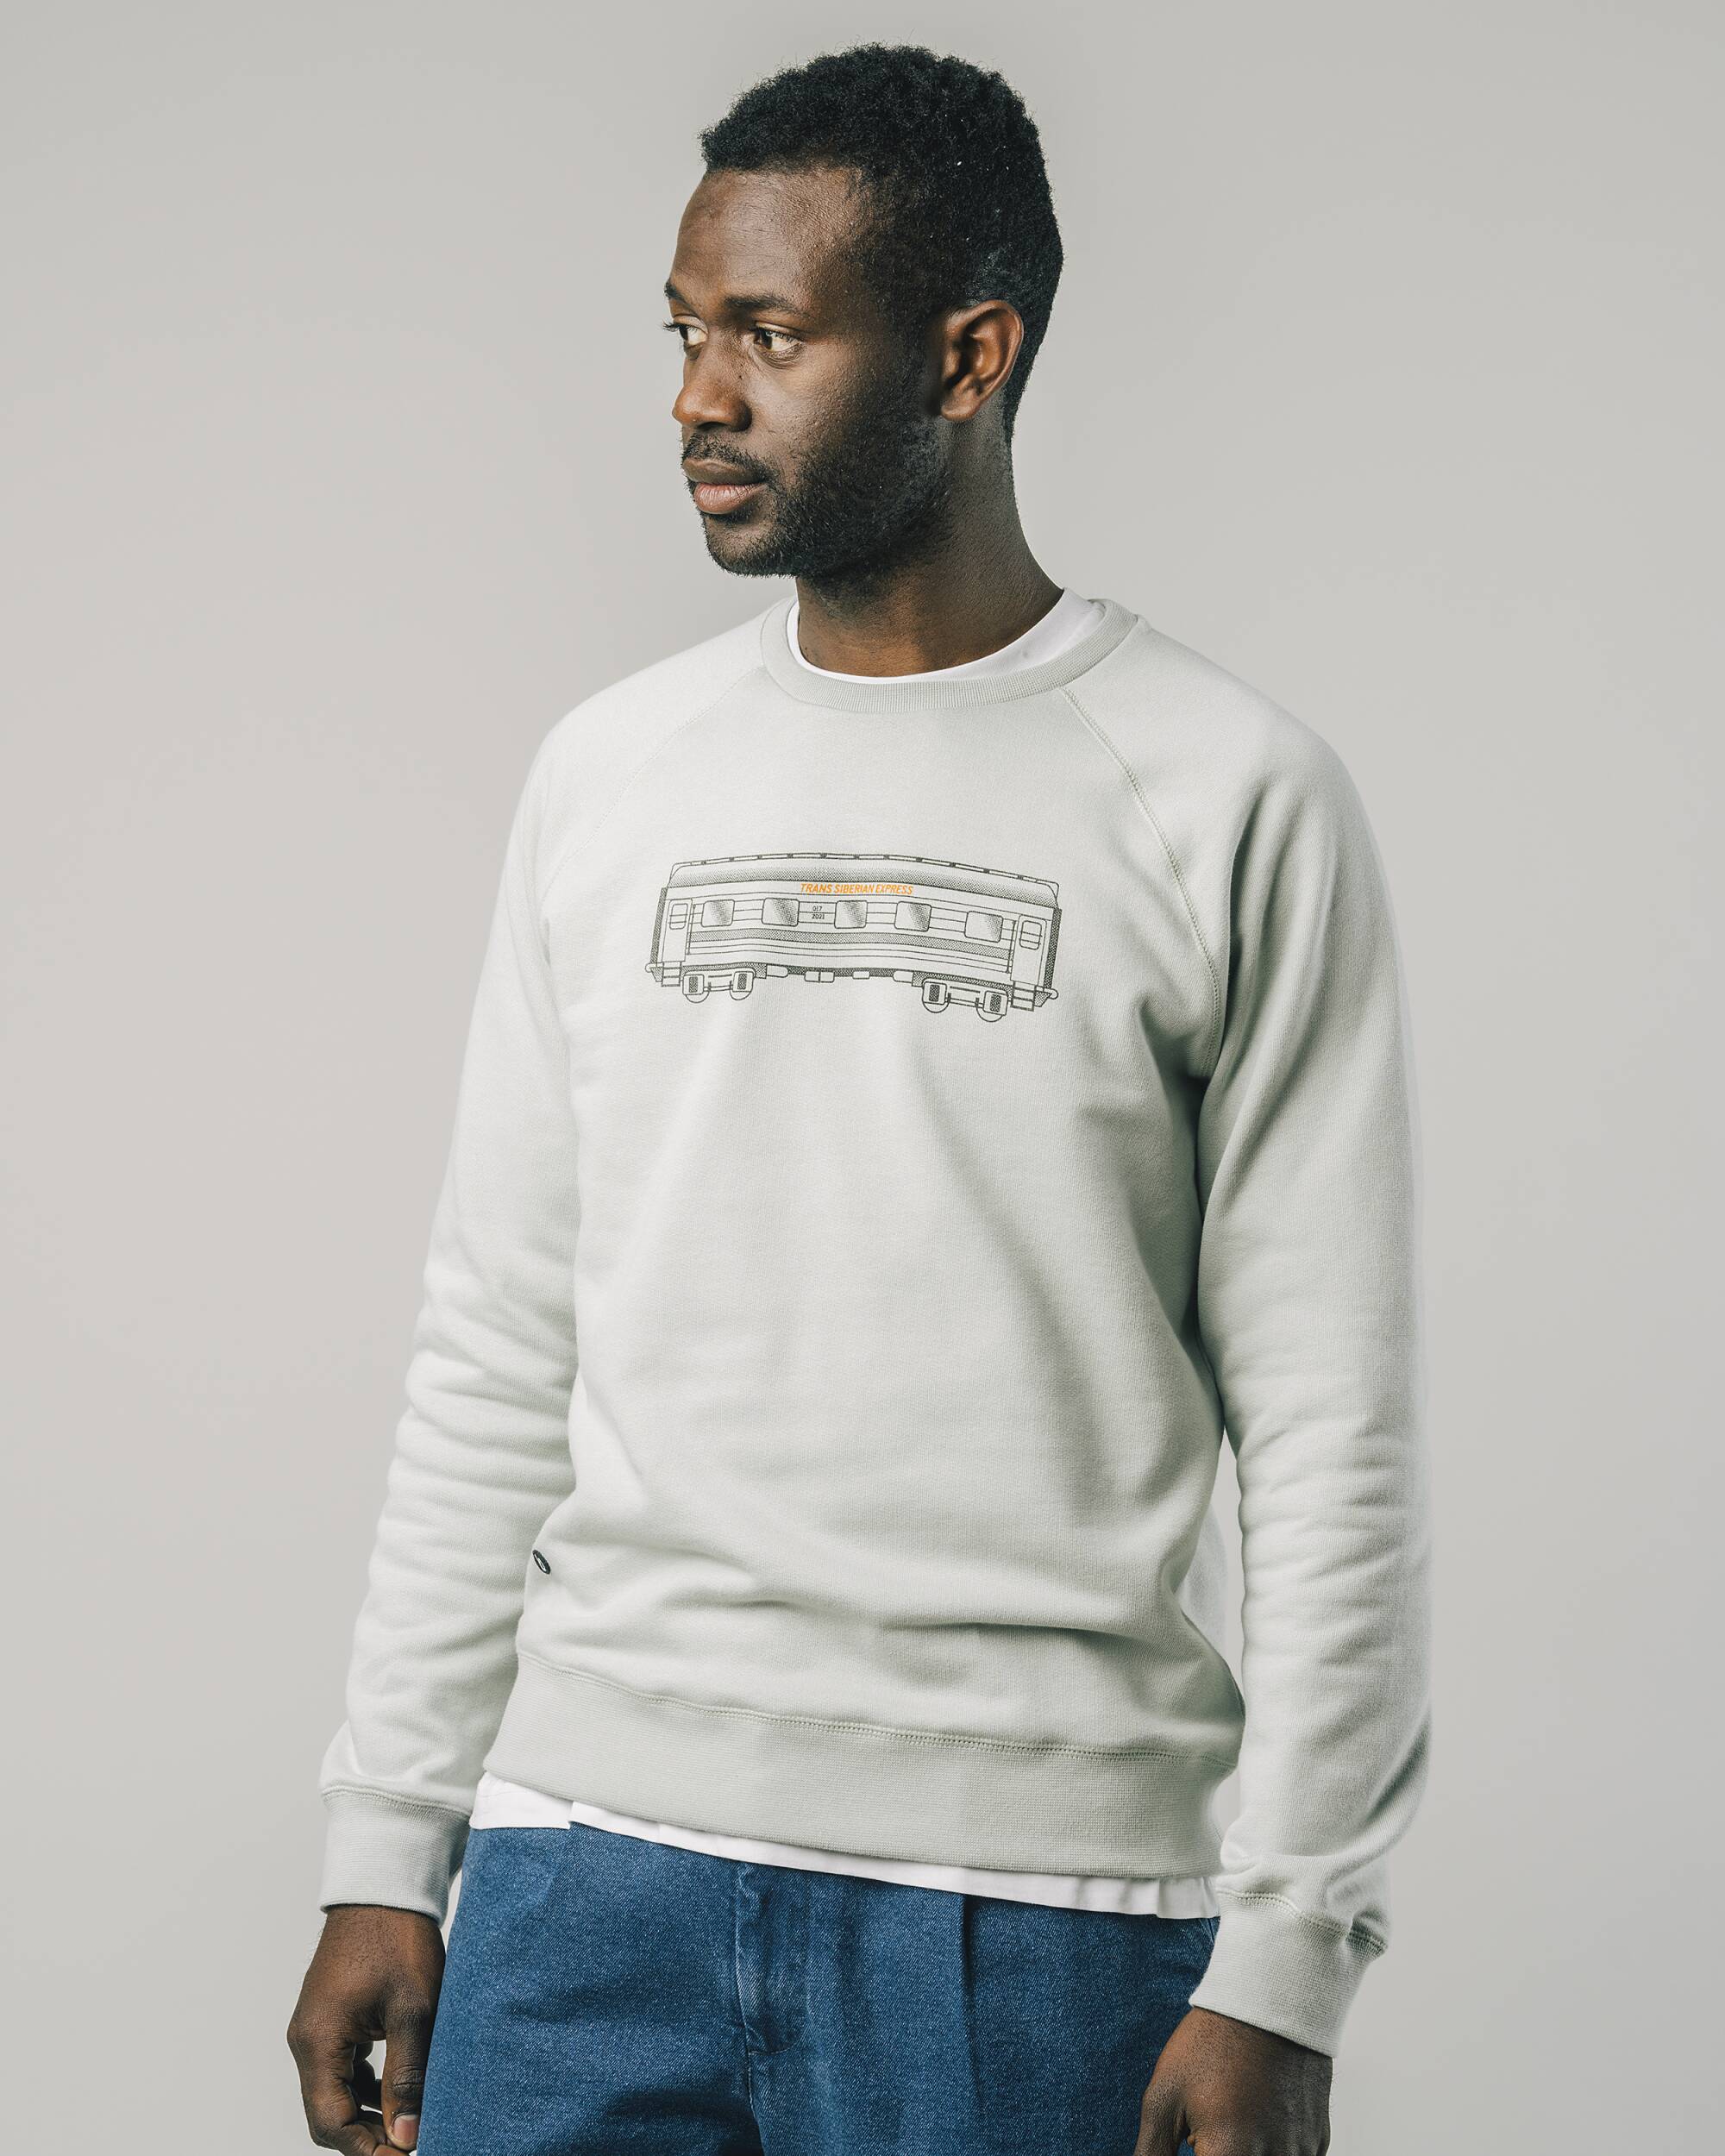 Sweatshirt "Wagon" in grau aus 100% Bio - Baumwolle von Brava Fabrics